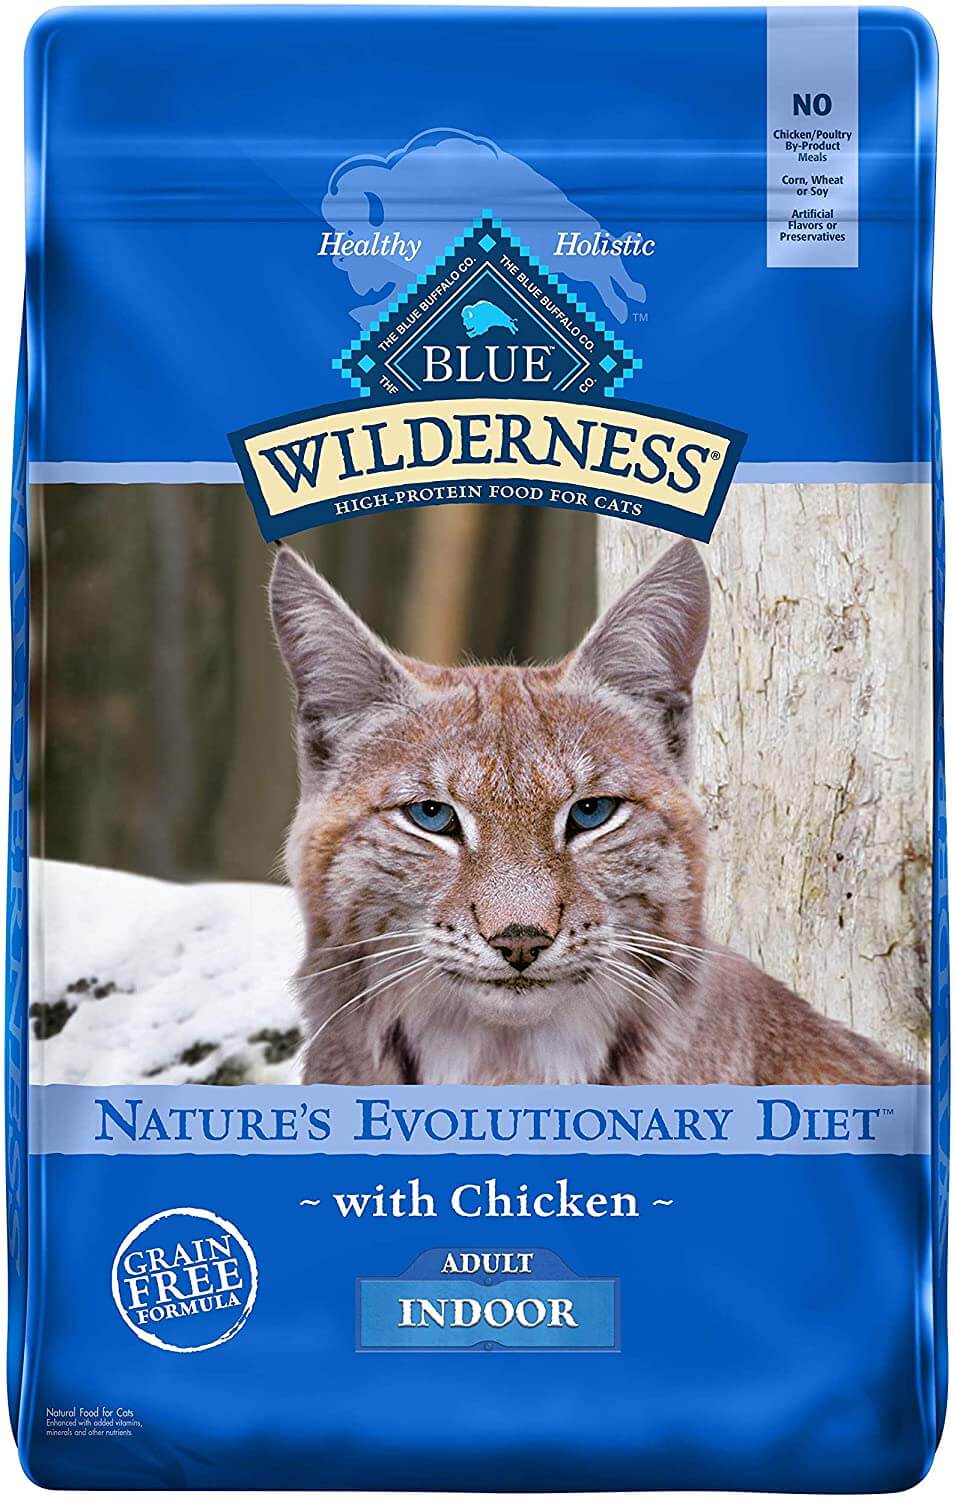 Blue wilderness Indoor cat food